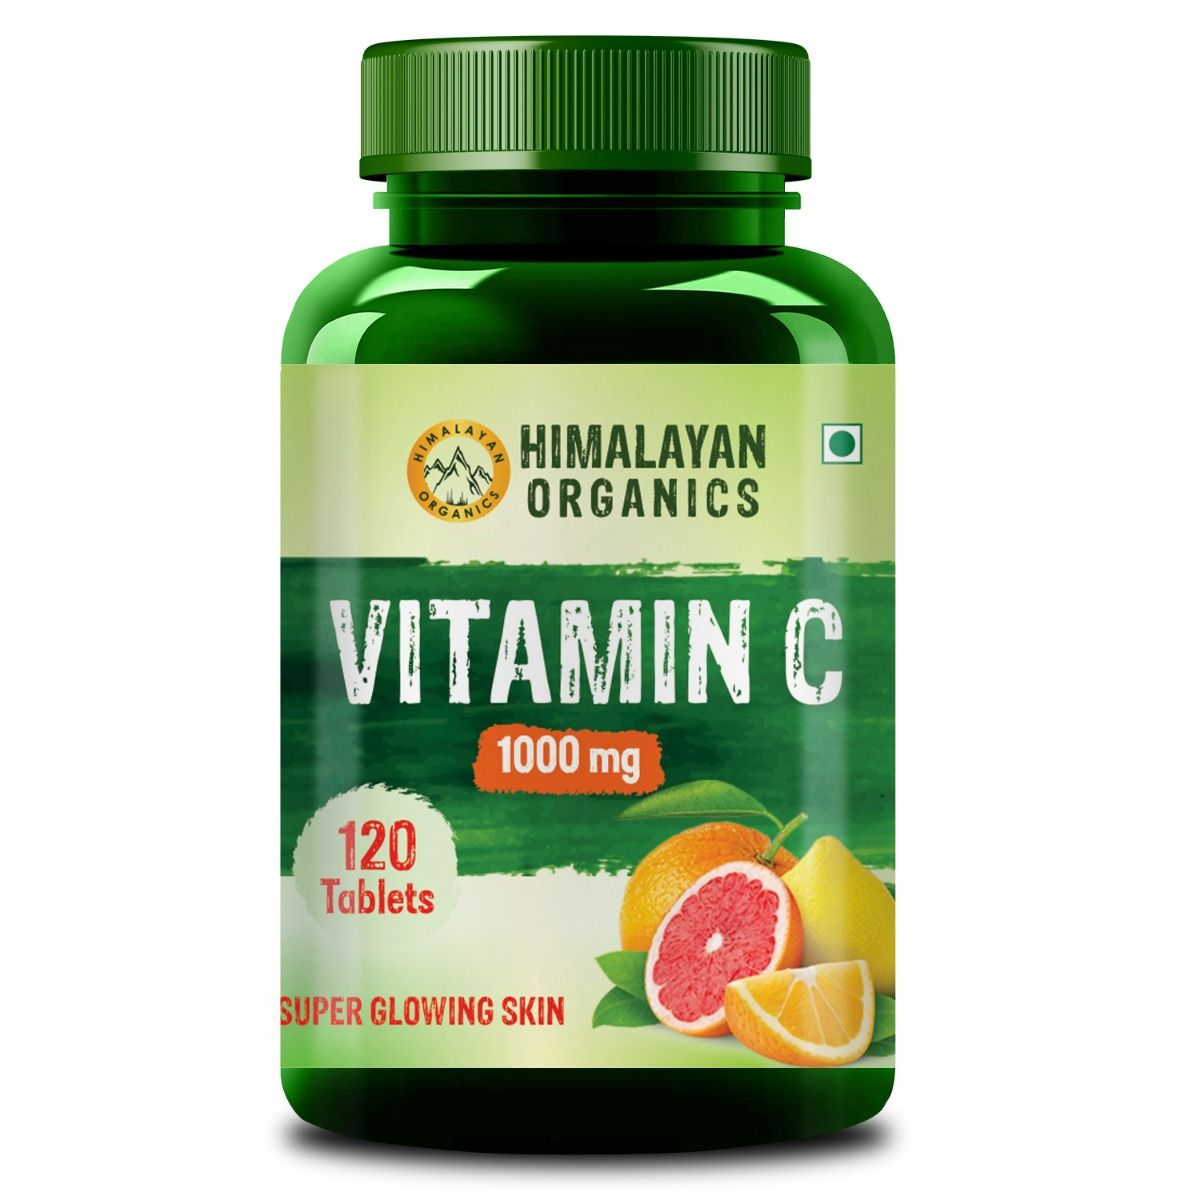 Himalayan Organics Vitamin C 1000 mg, 120 Tablets, Pack of 1 